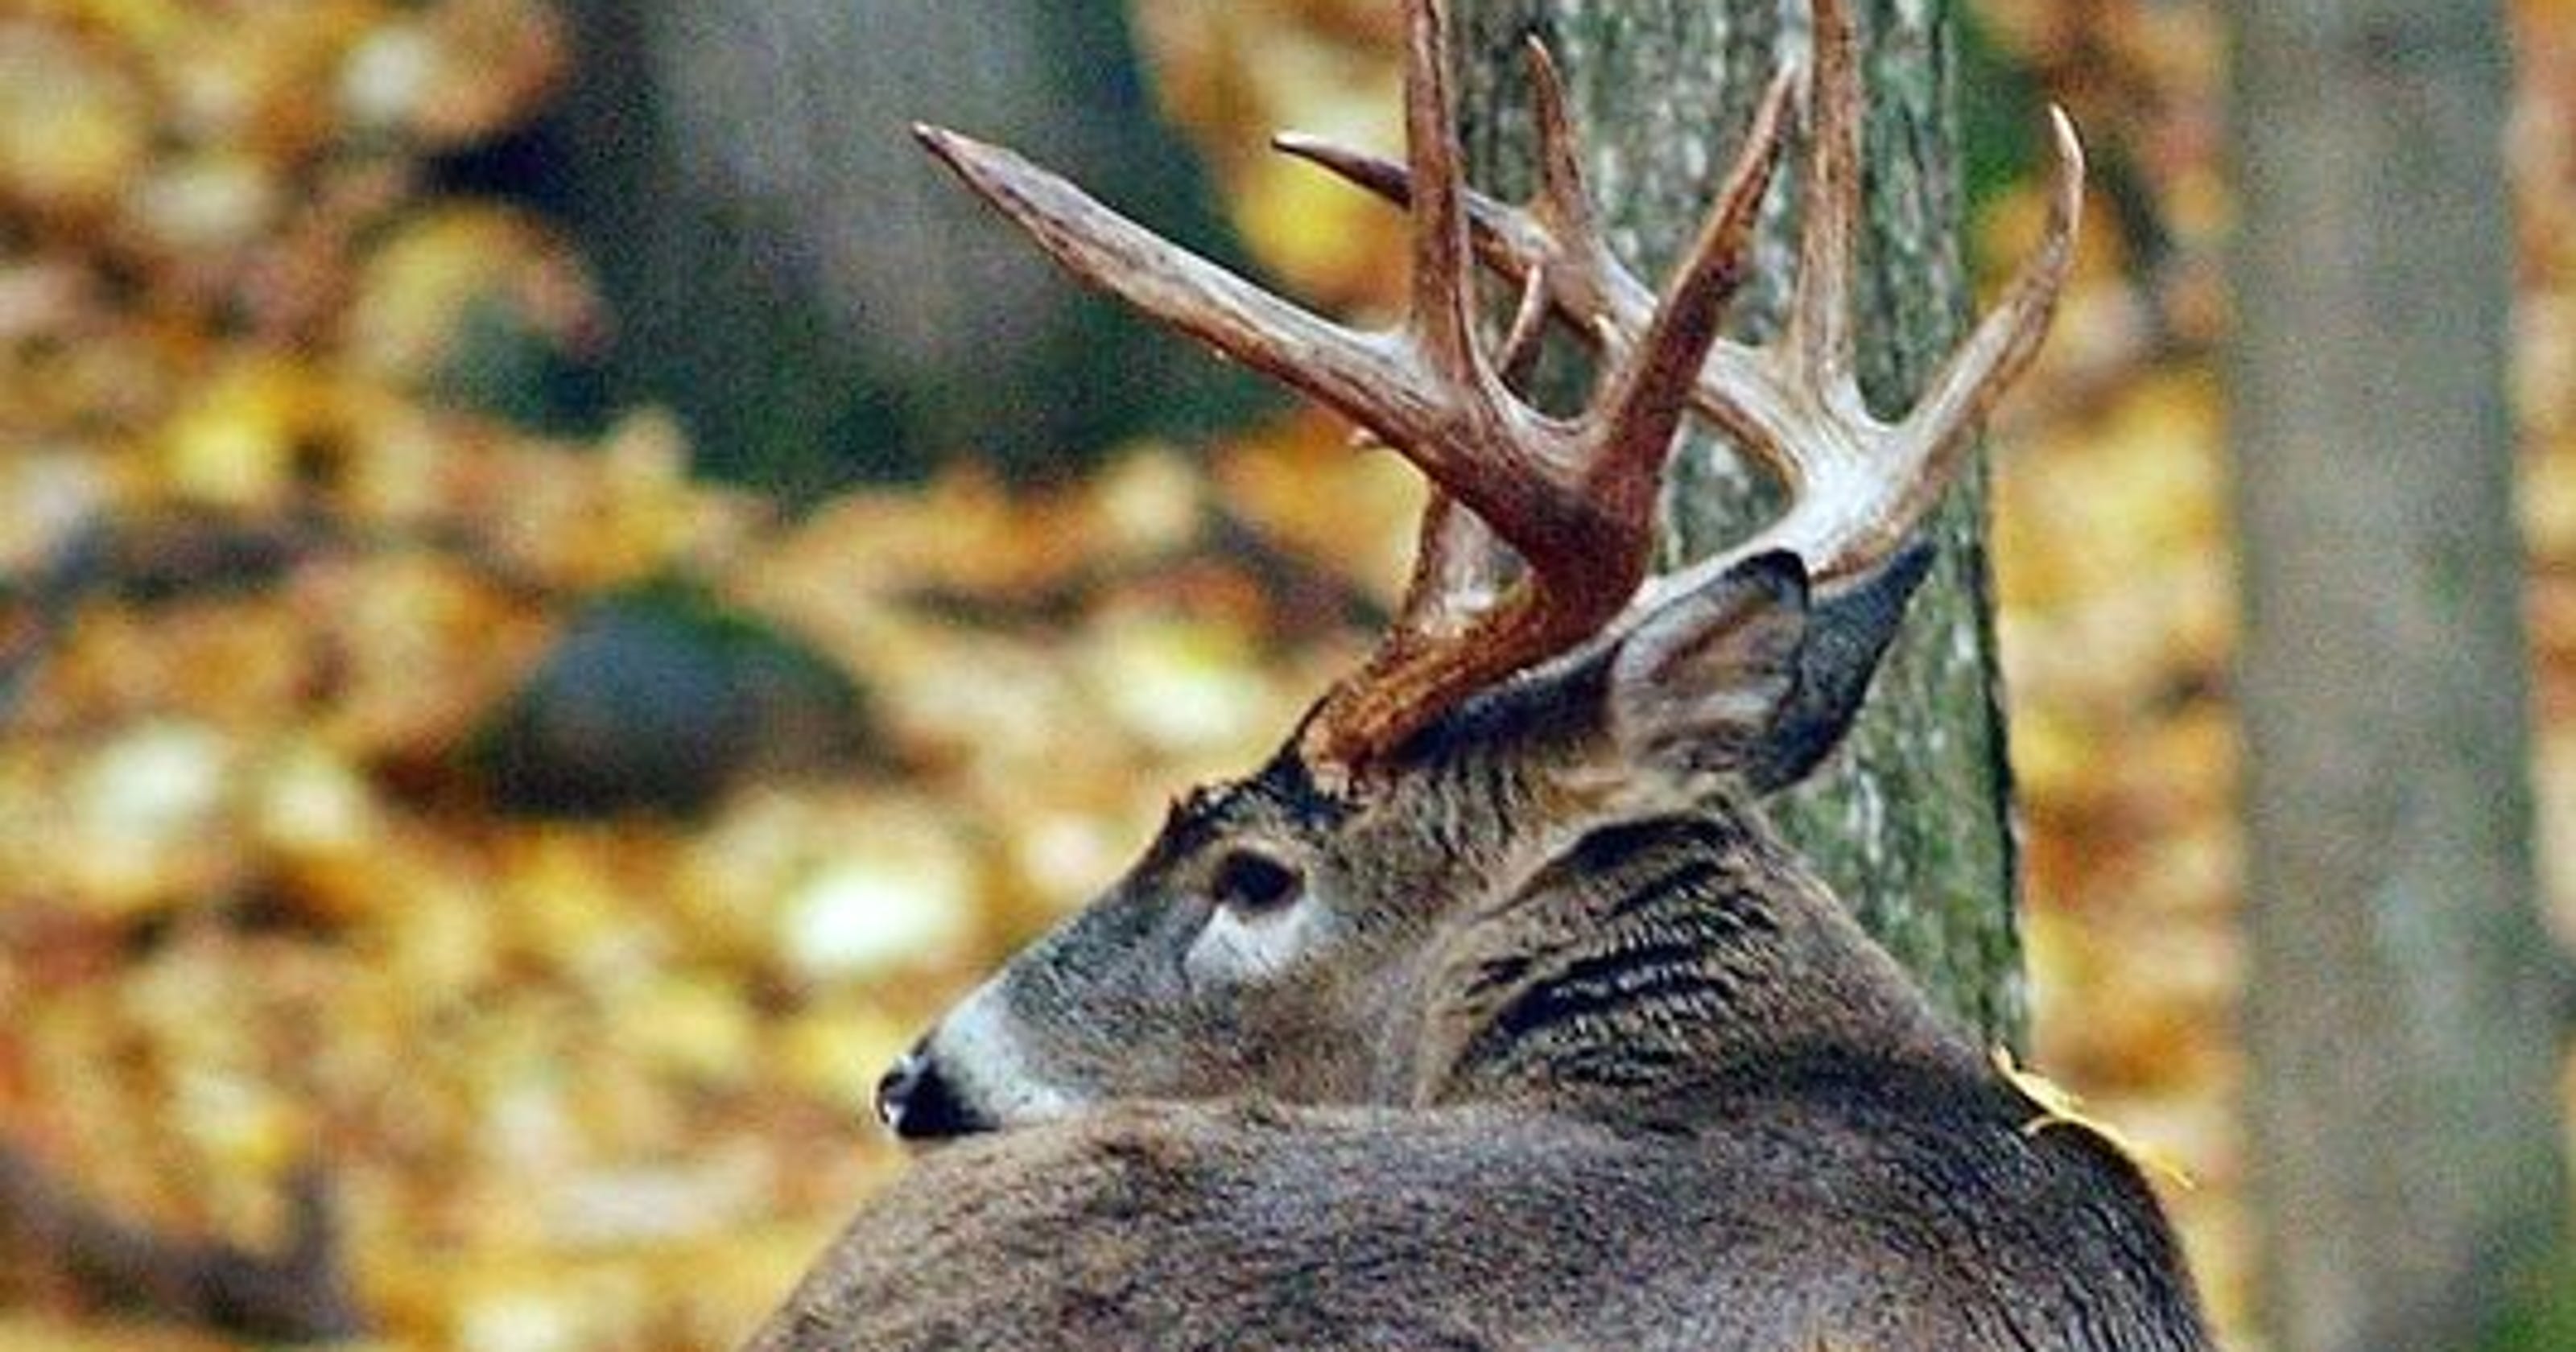 Michigan hunter fined 15,000 for poaching